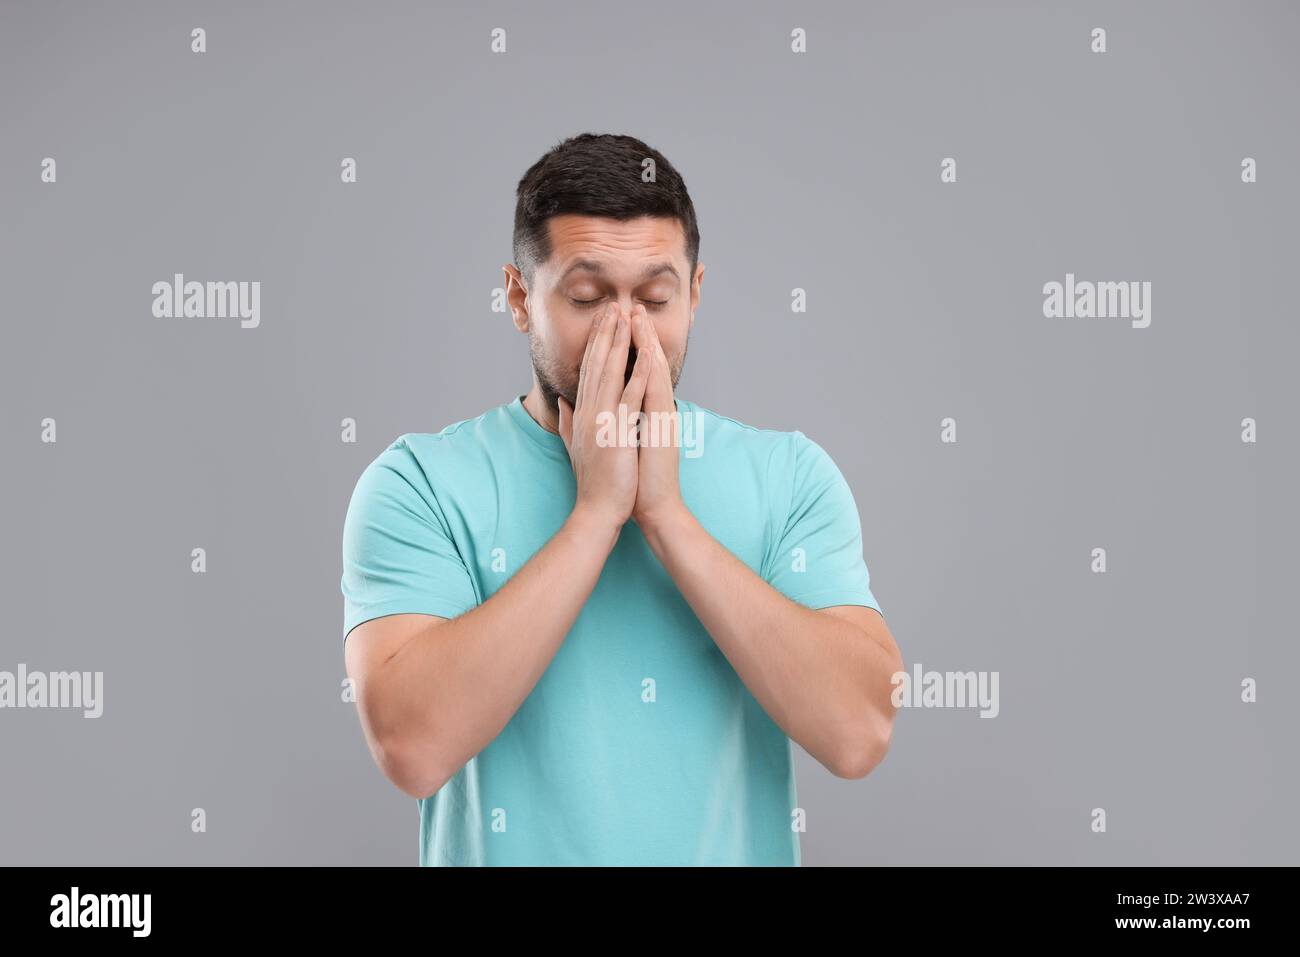 Allergiesymptom. Mann niest auf hellgrauem Hintergrund Stockfoto